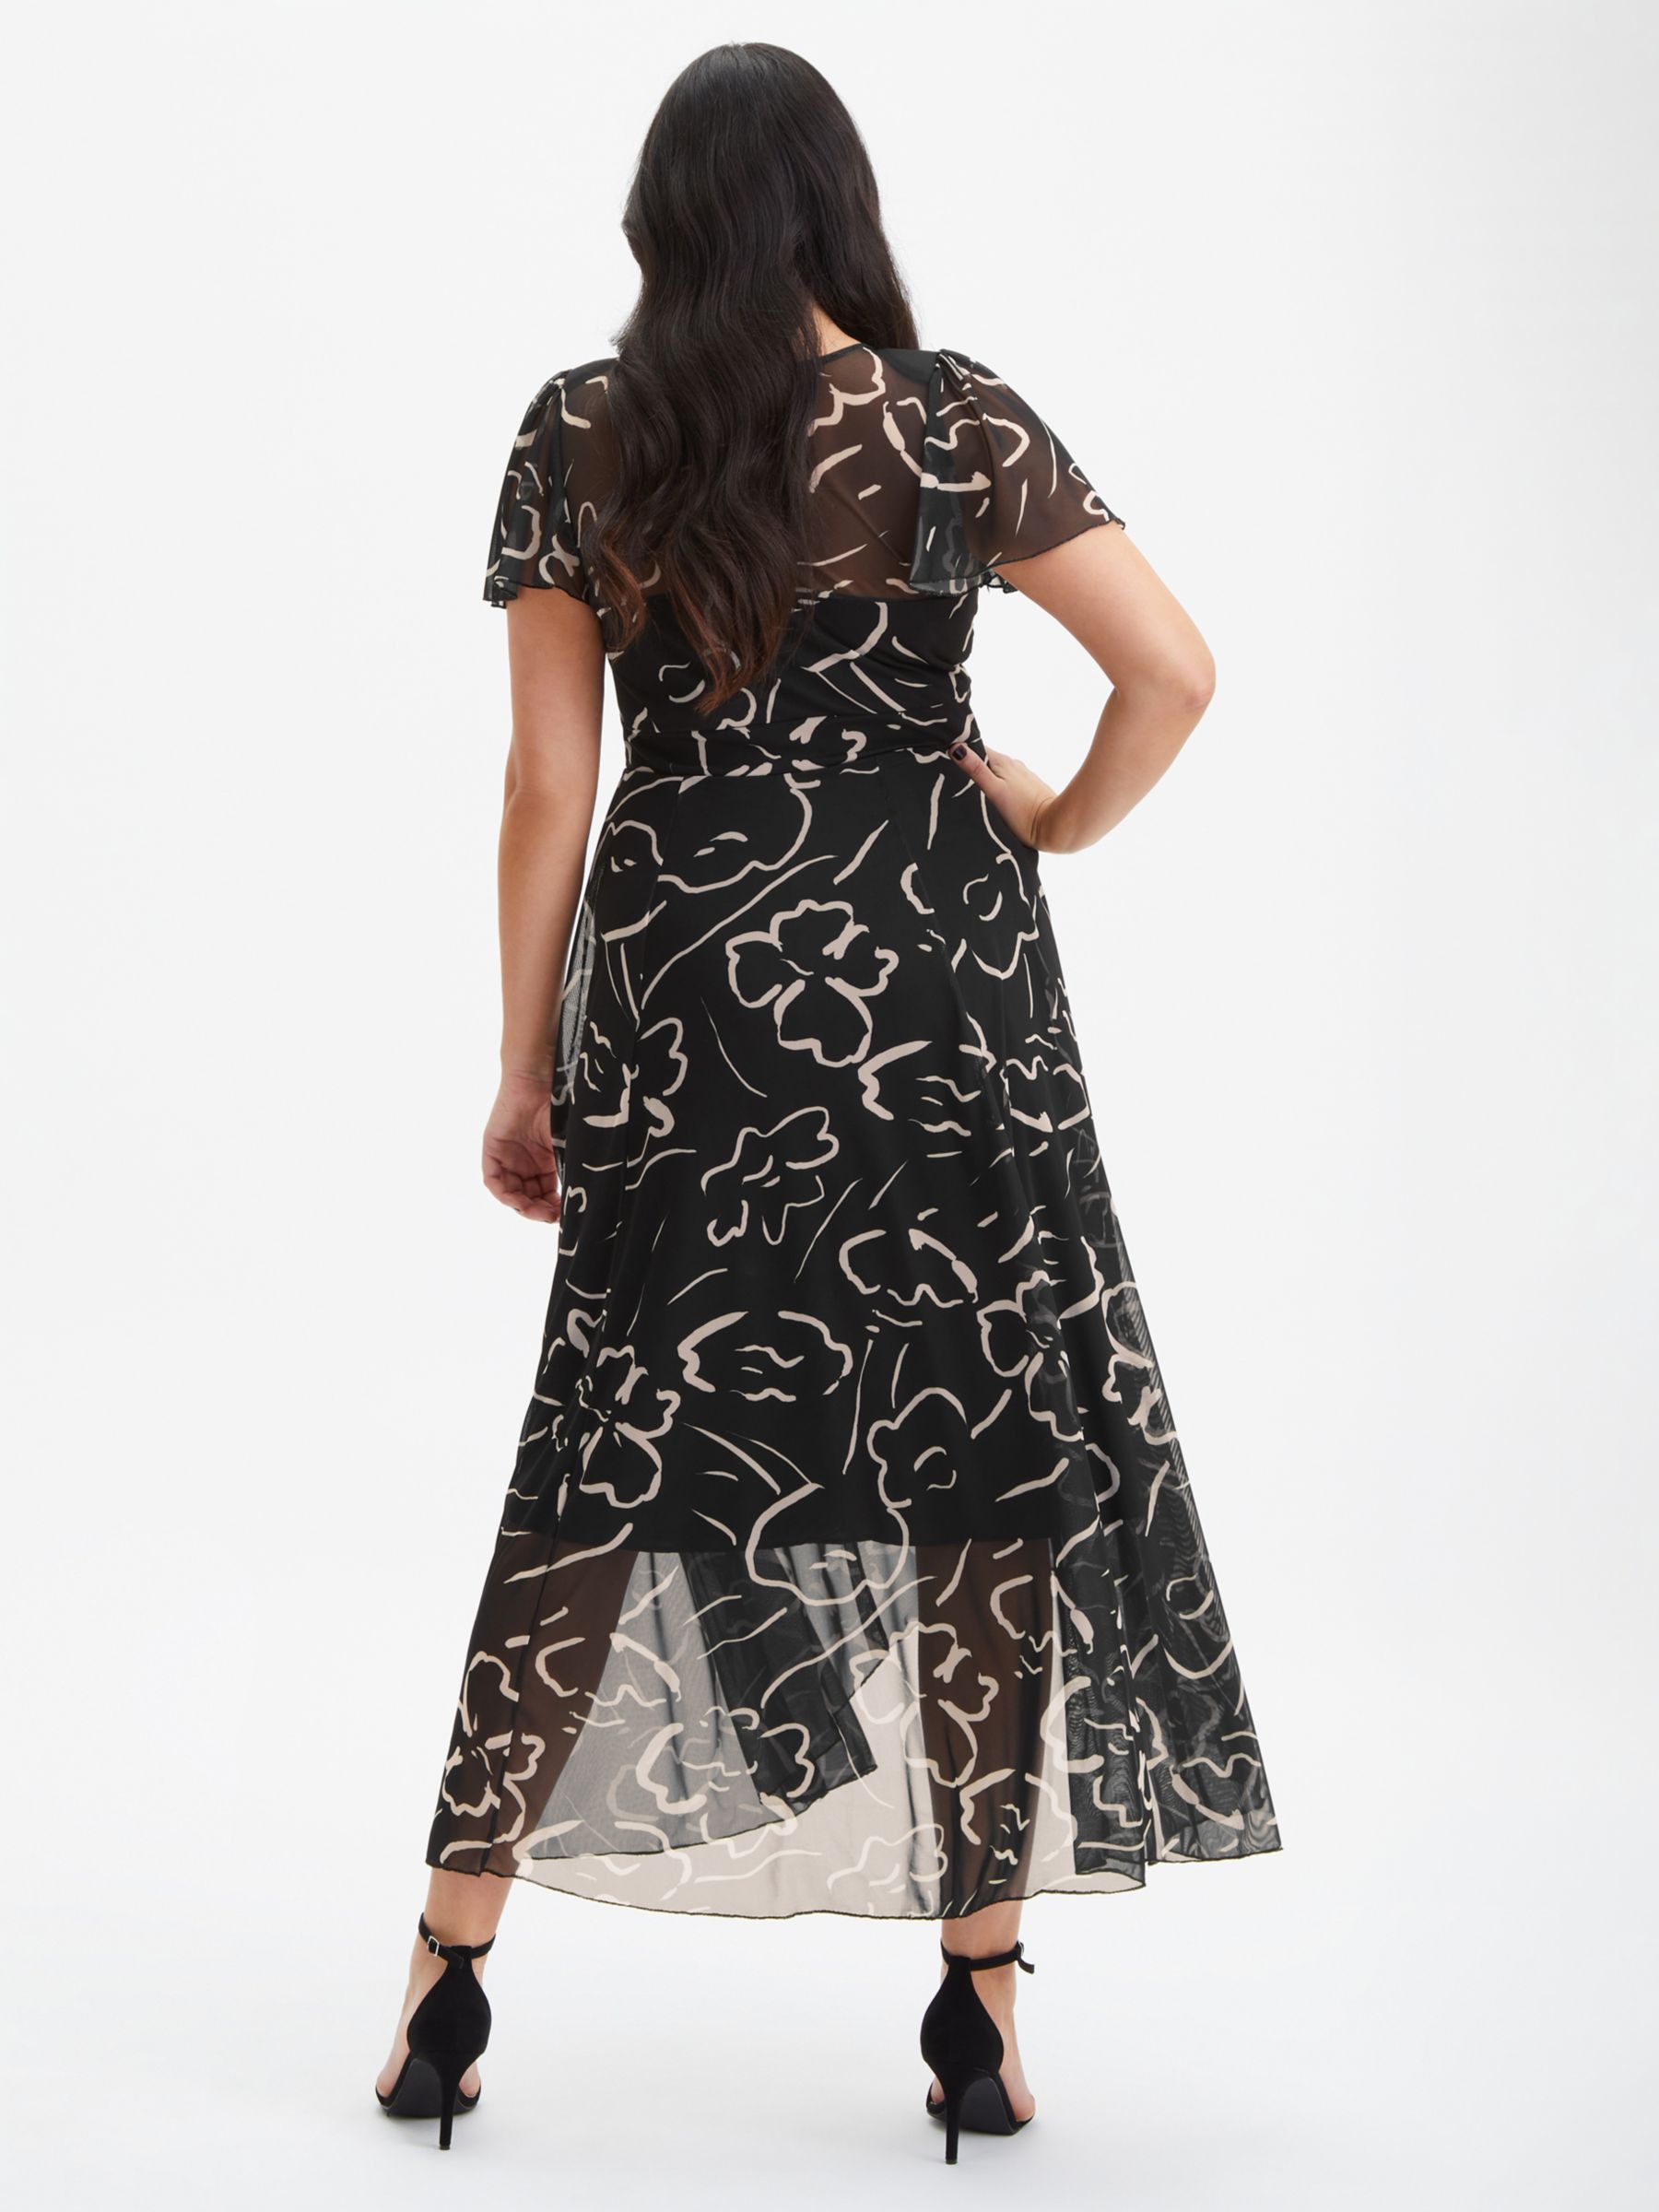 Scarlett & Jo Print Angel Sleeve Sweetheart Dress, Black/Ecru, 24